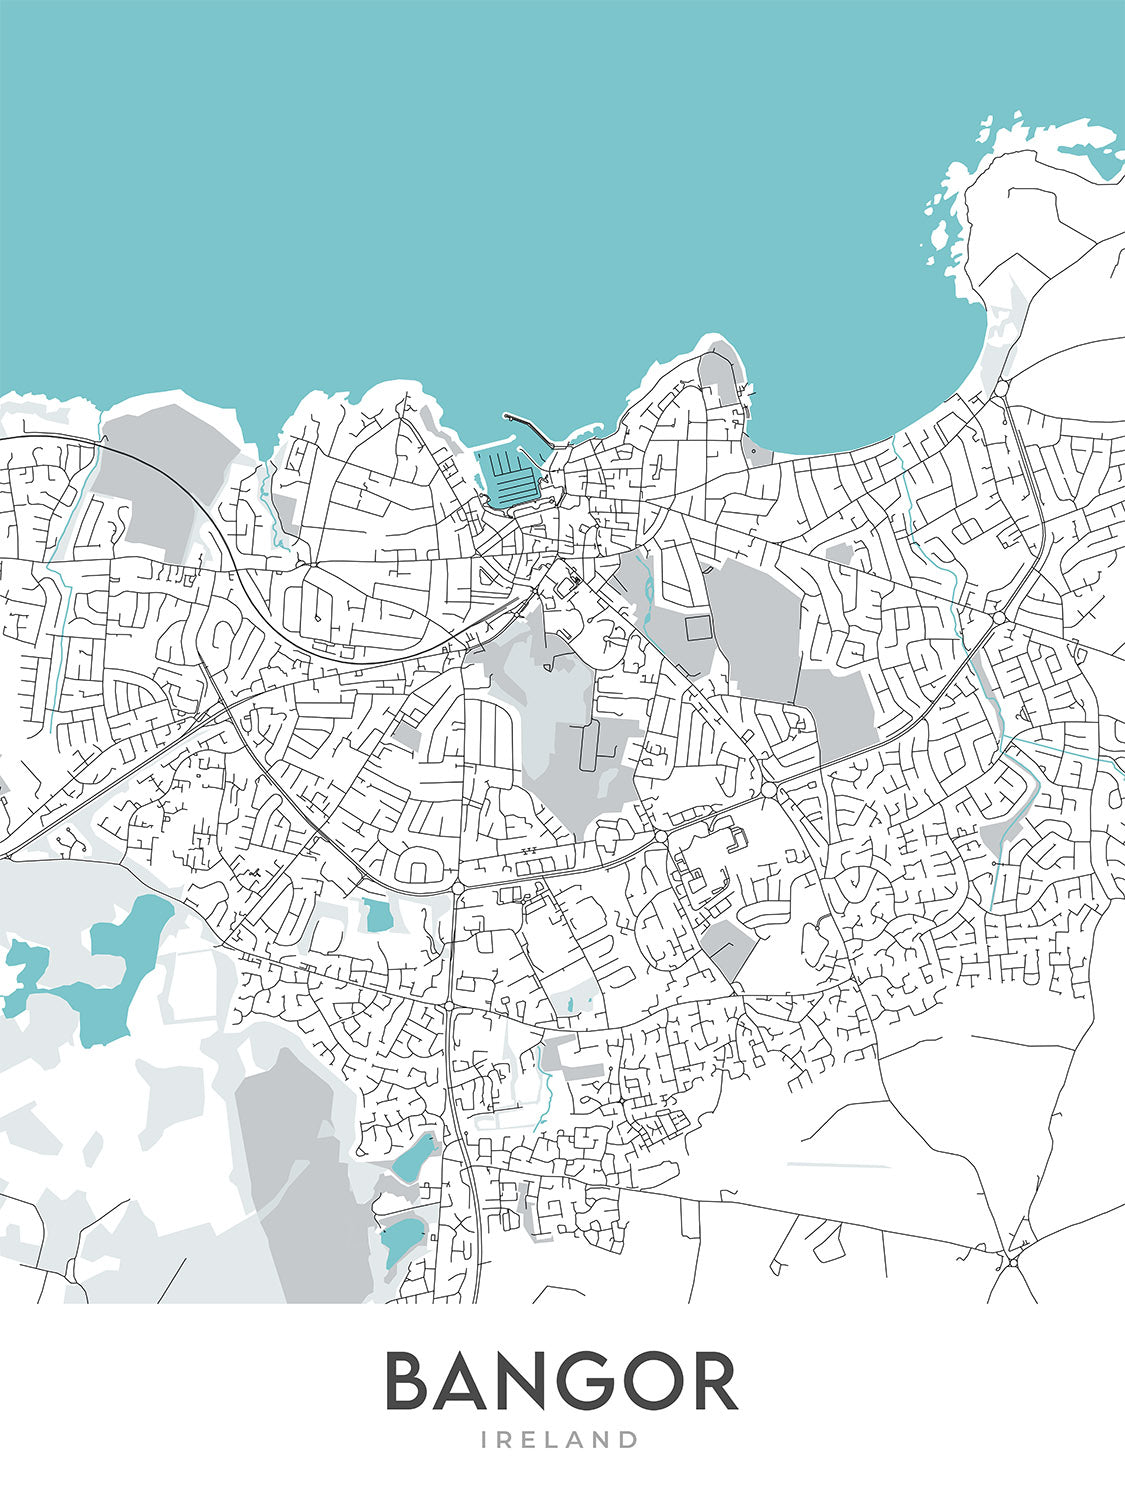 Mapa moderno de la ciudad de Bangor, Irlanda del Norte: Ballyholme, Castillo de Bangor, Ward Park, A2, Marina